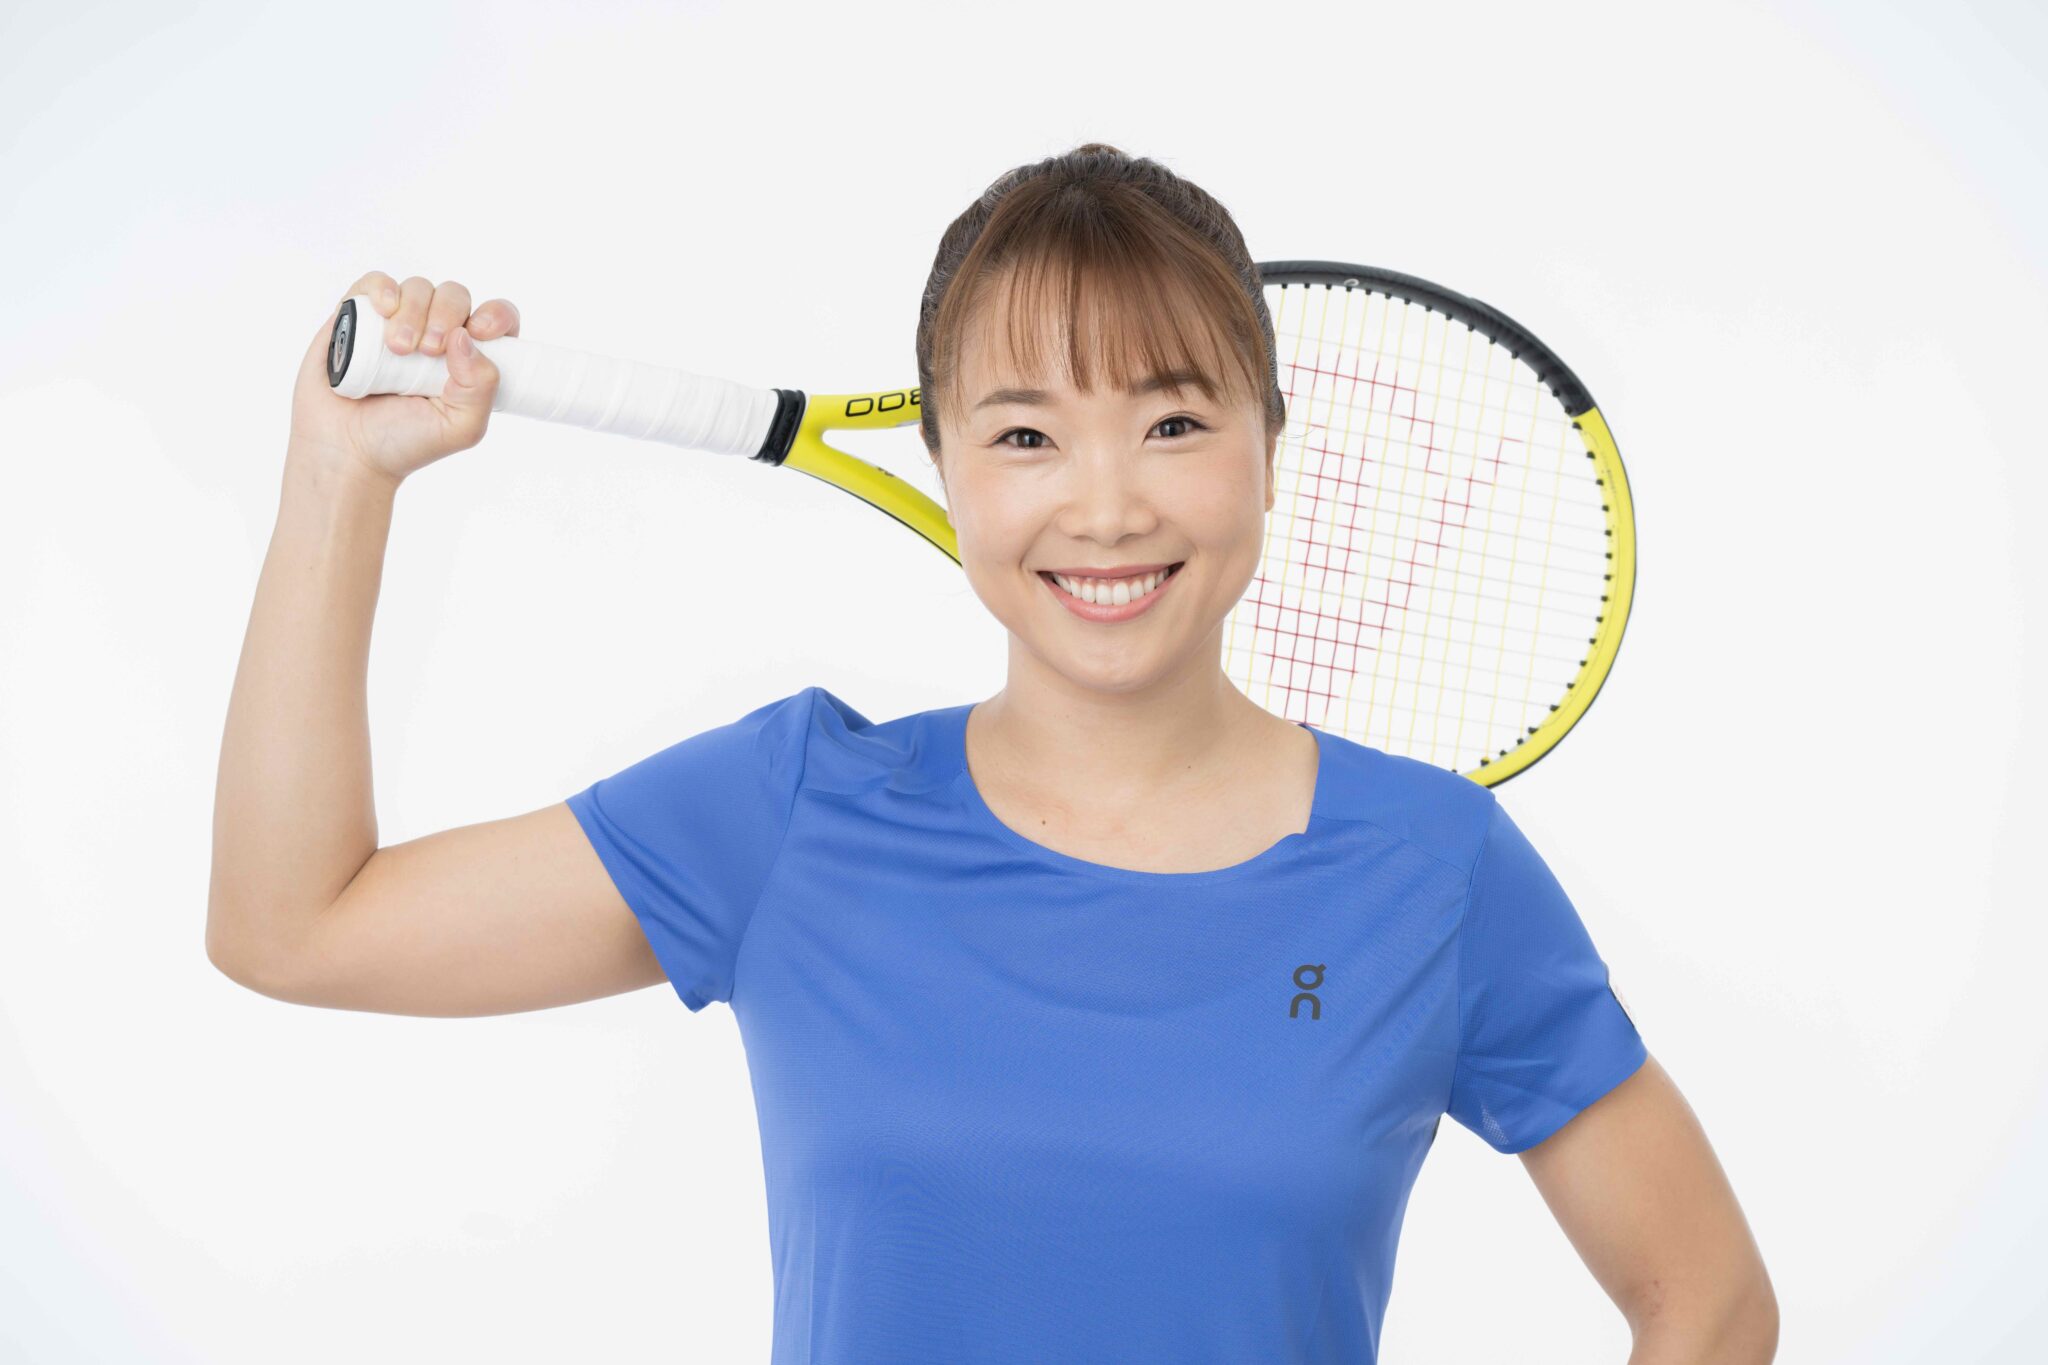 奈良くるみさんが、スイスのスポーツブランド【On】のジャパン テニスストラテジー アドバイザーに就任					サイト内検索